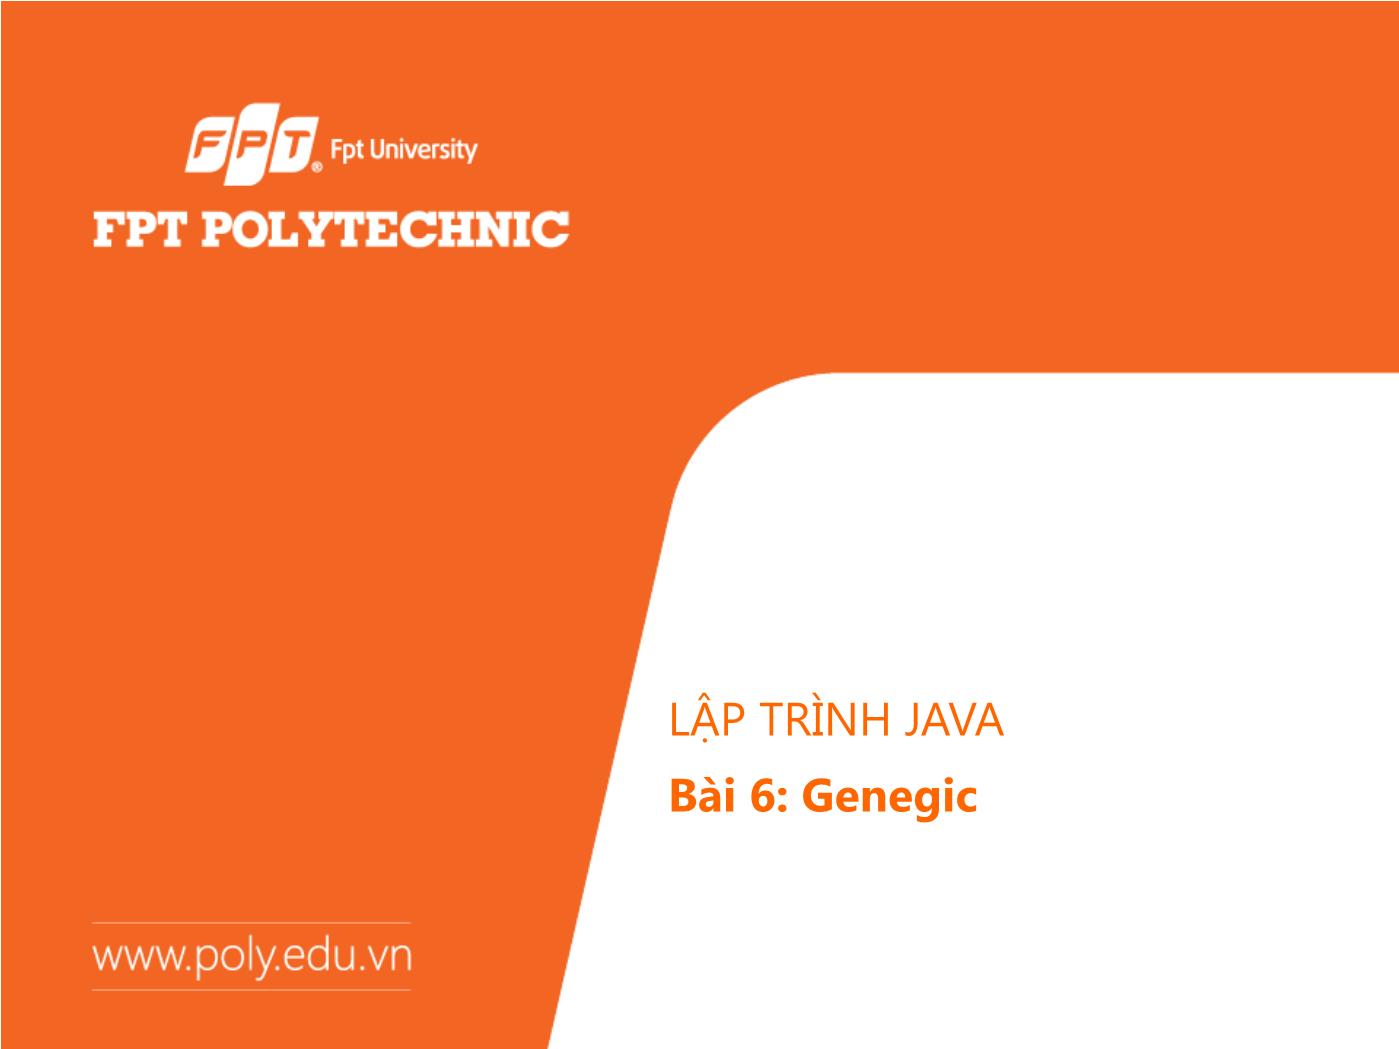 Bài giảng Lập trình Java - Bài 6: Genegic - Trường Đại học FPT trang 1